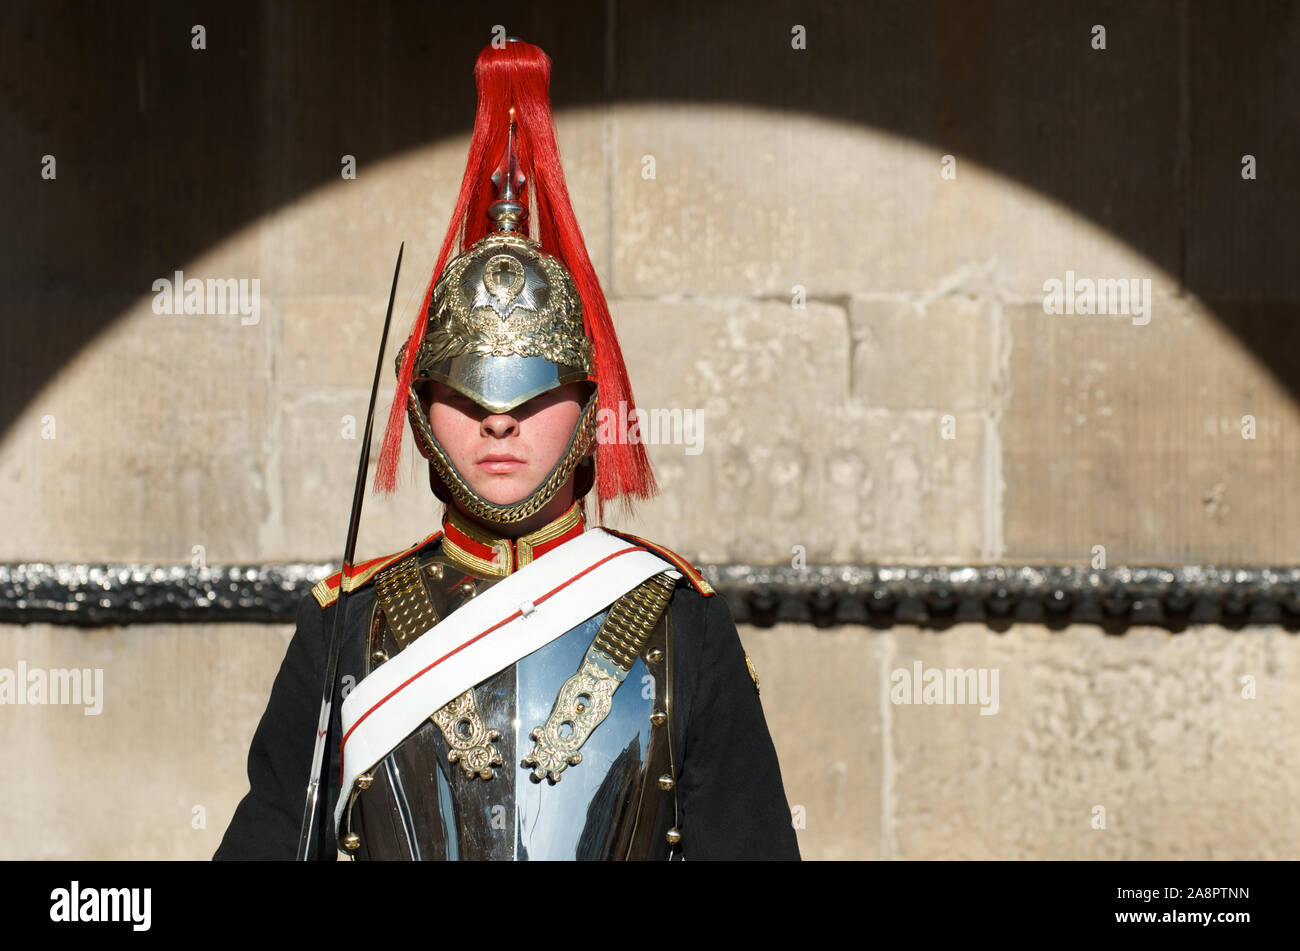 London - 14. OKTOBER 2011: Abgesaugt Sentry at Horse Guards Arch, Saint James's Palace, Whitehall, eine Tradition, die seit der Tudor Times aufrecht erhalten wird. Stockfoto